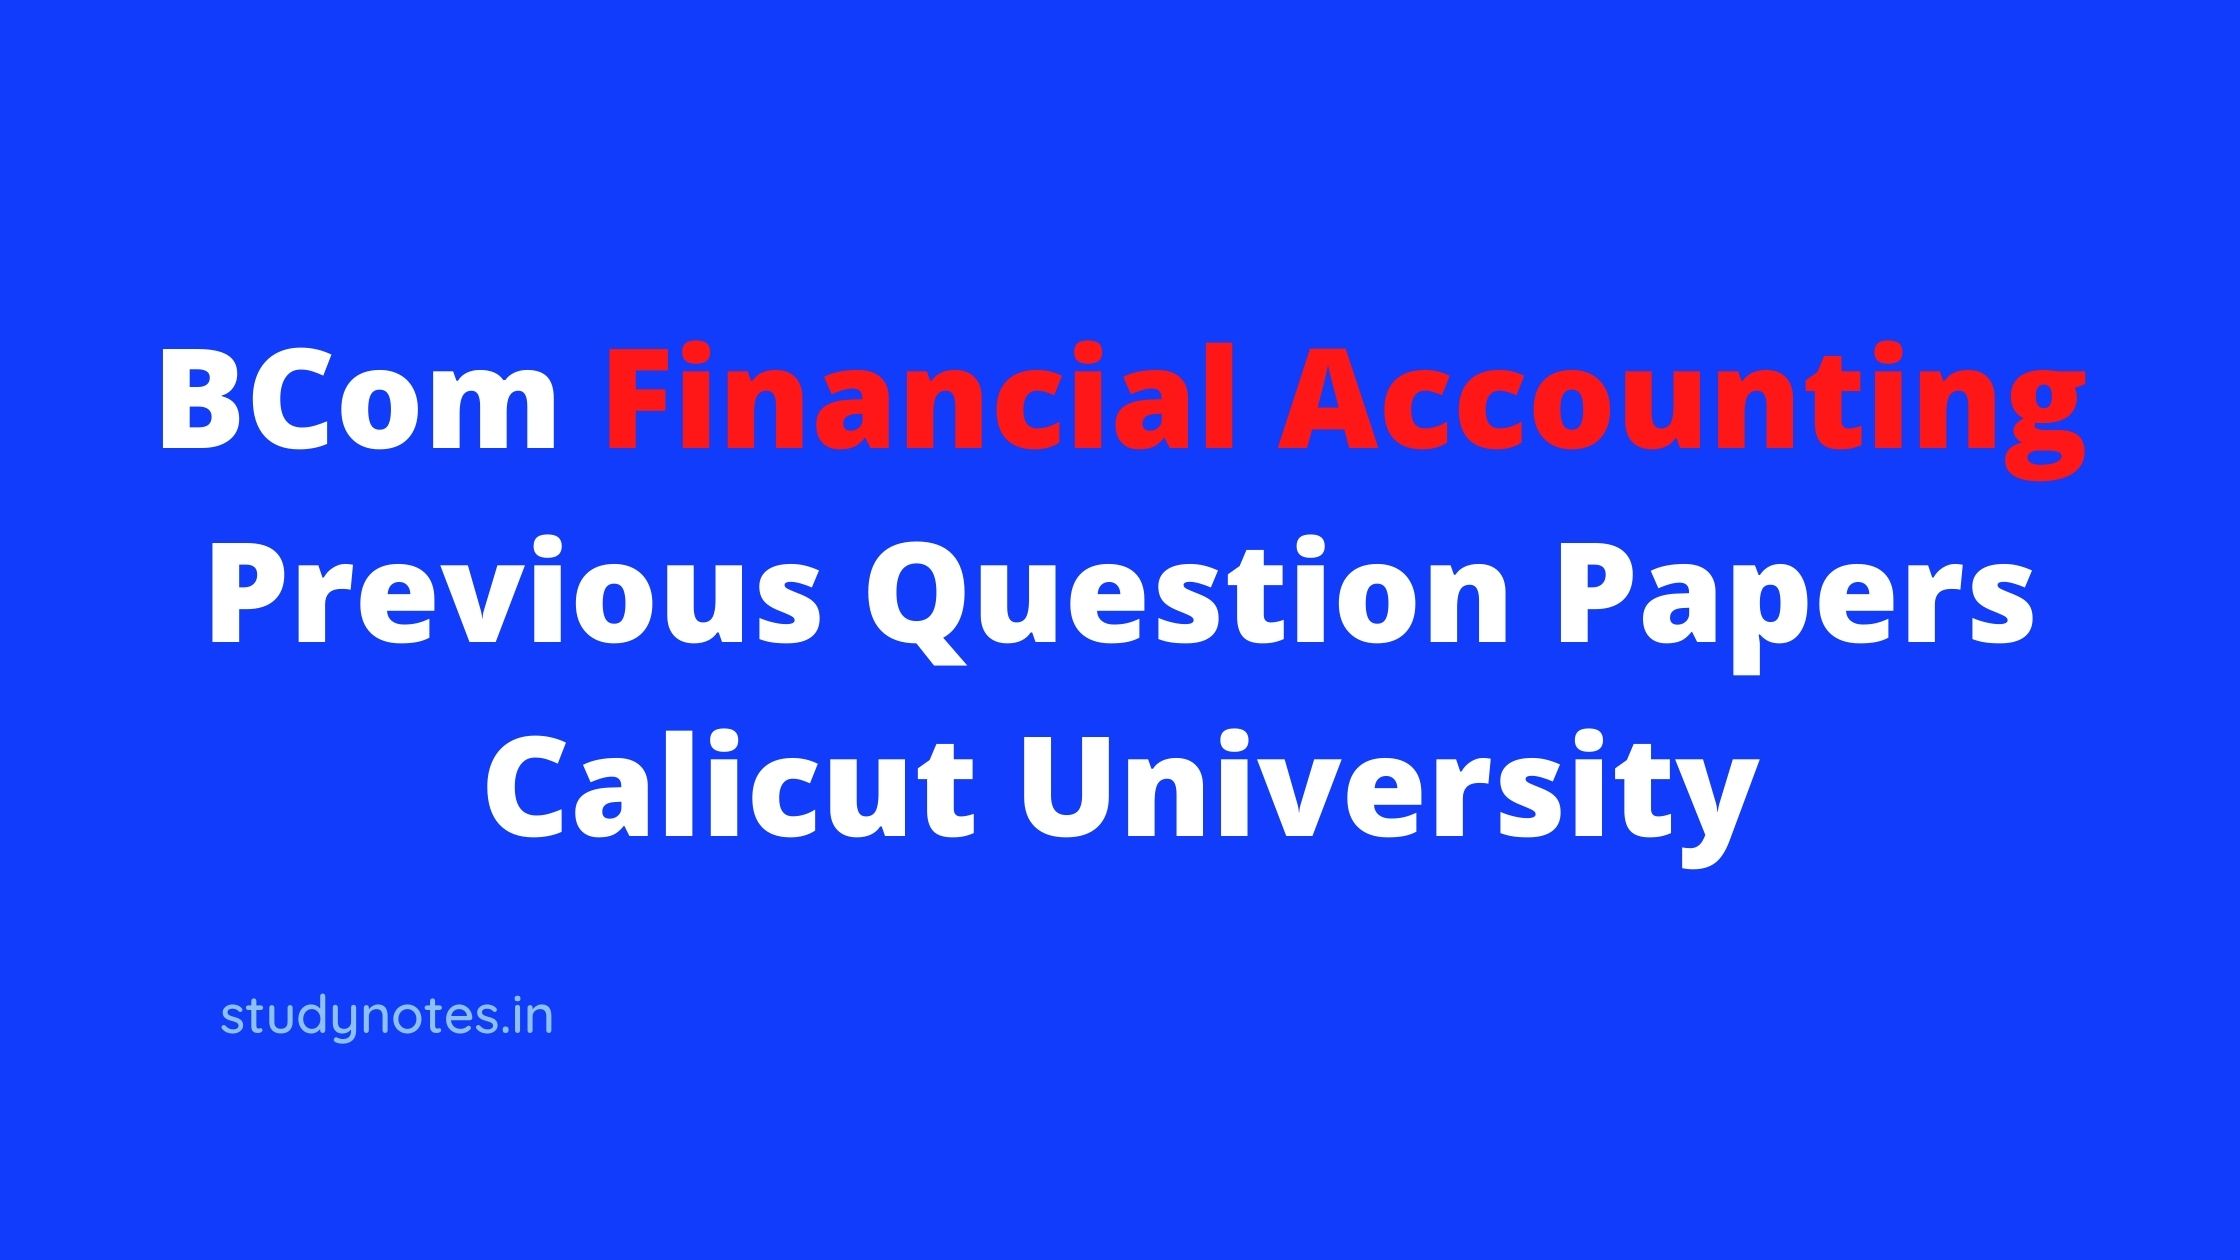 Financial AccoFinancial Accountig Previous Question Papersuntig Previous Question Papers